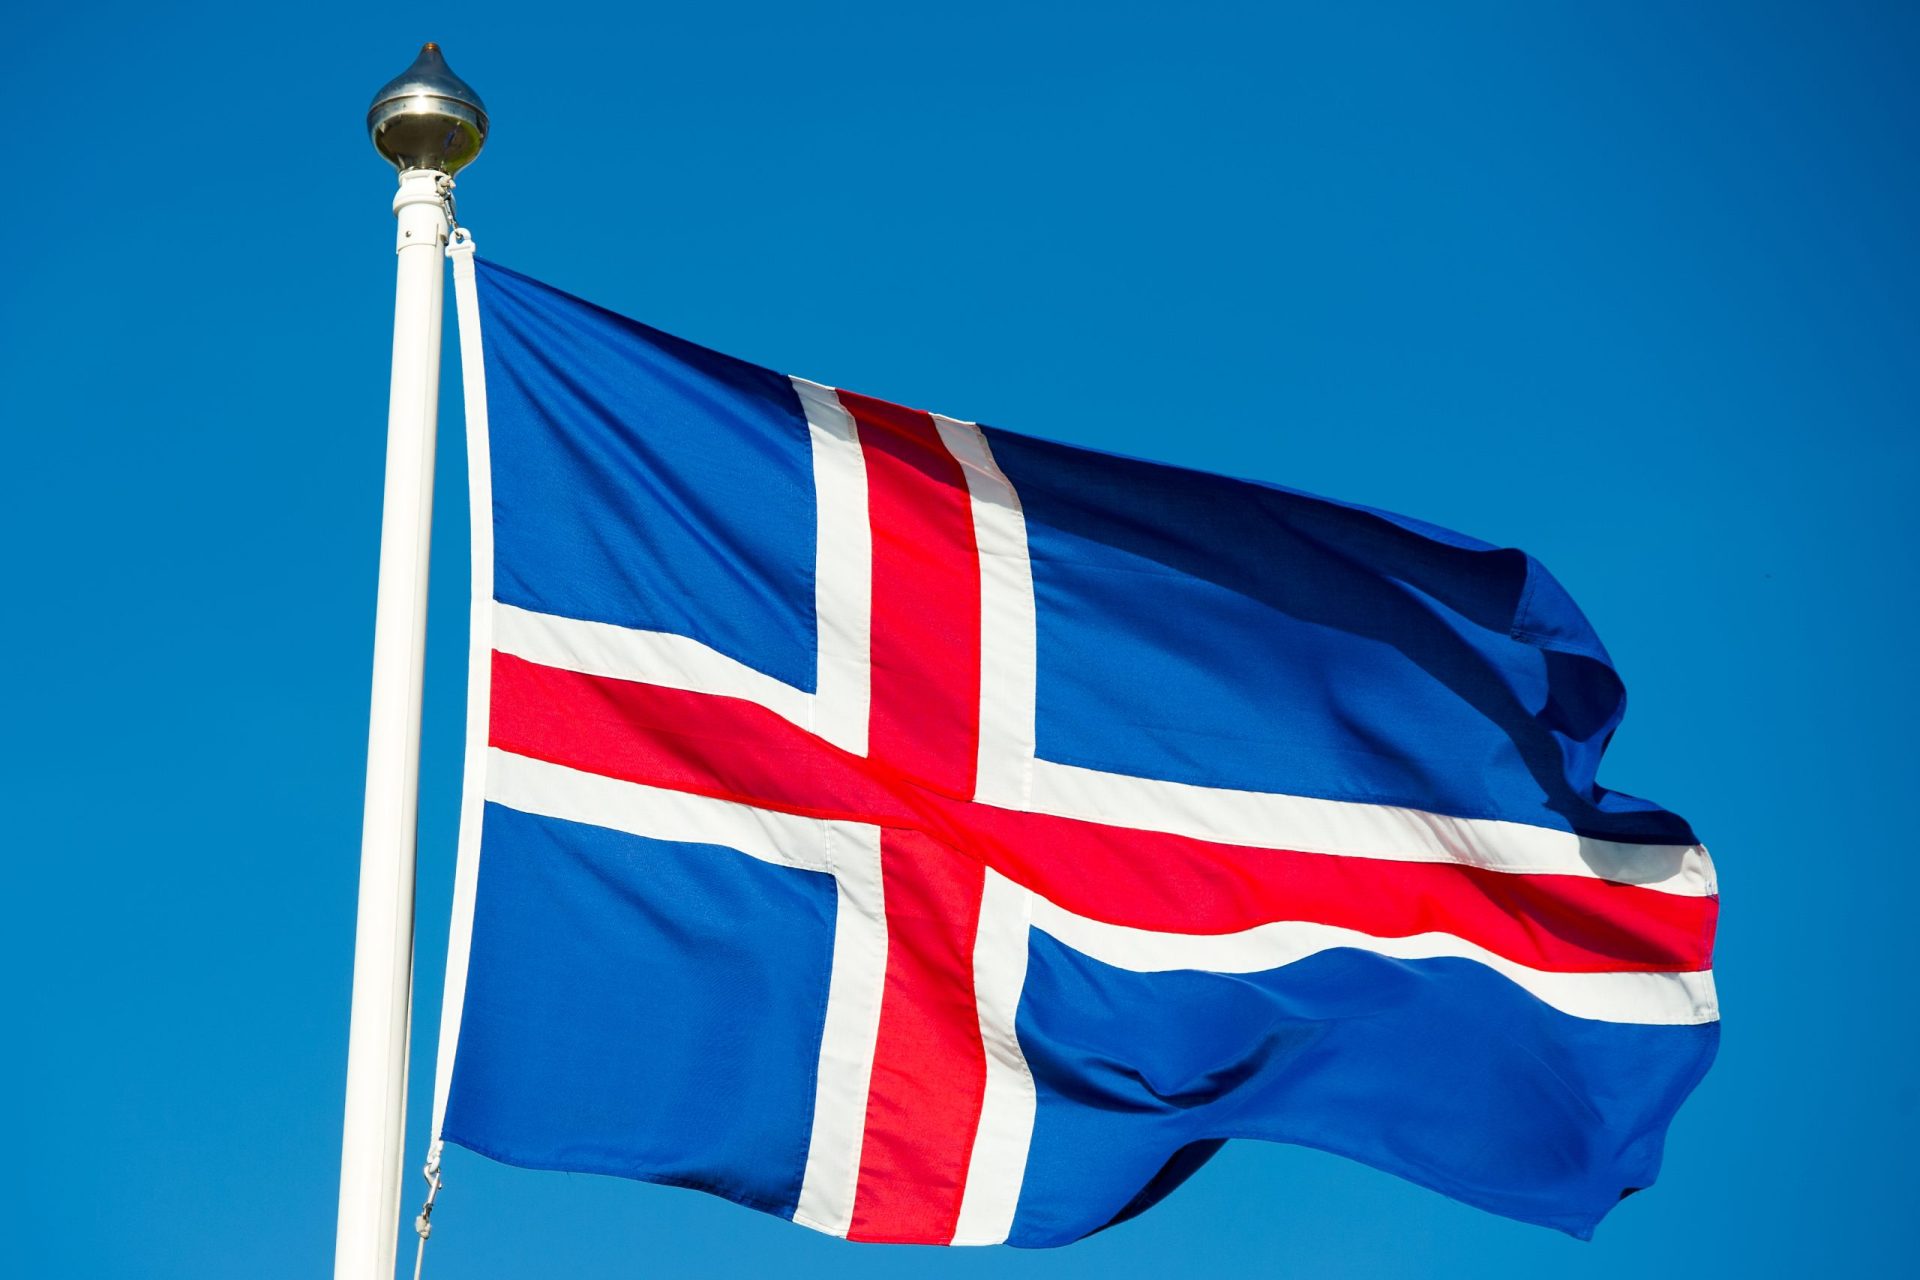 Presidente da Islândia vai dar o seu aumento salarial a instituições de caridade